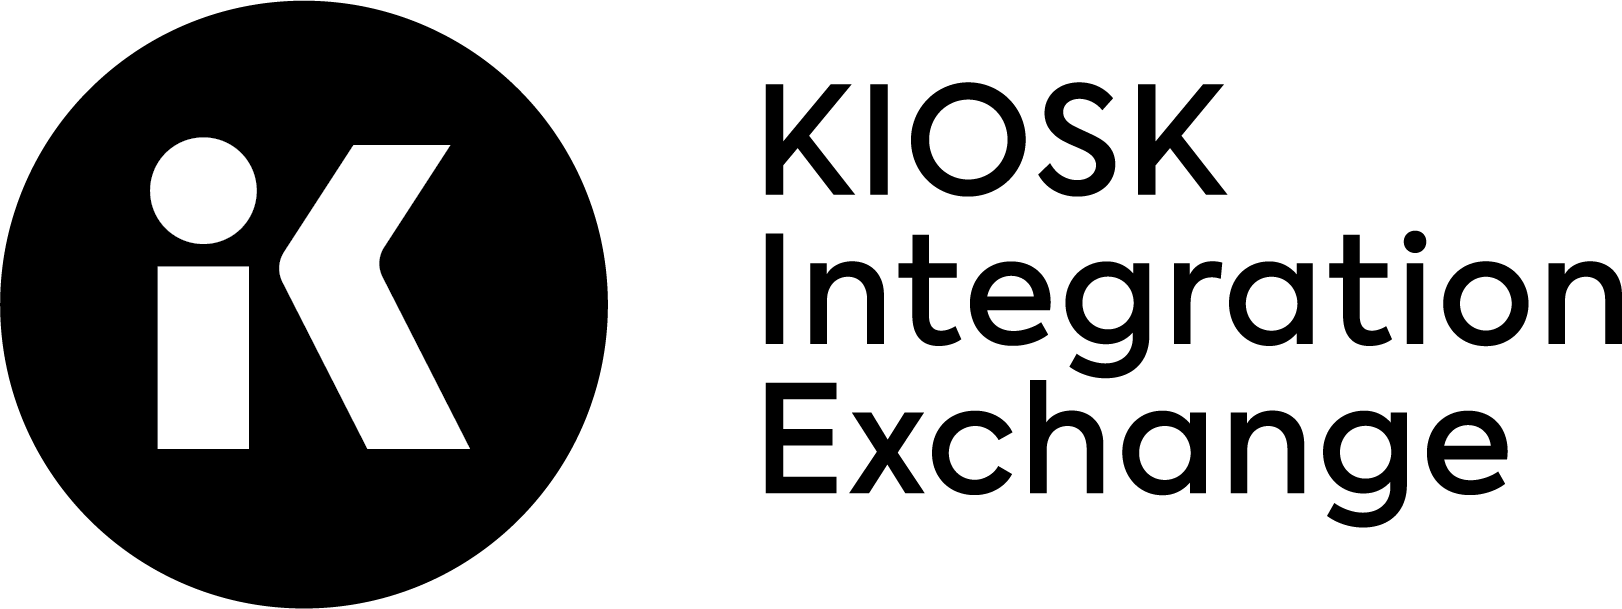 KIOSK Integration Exchange Logo